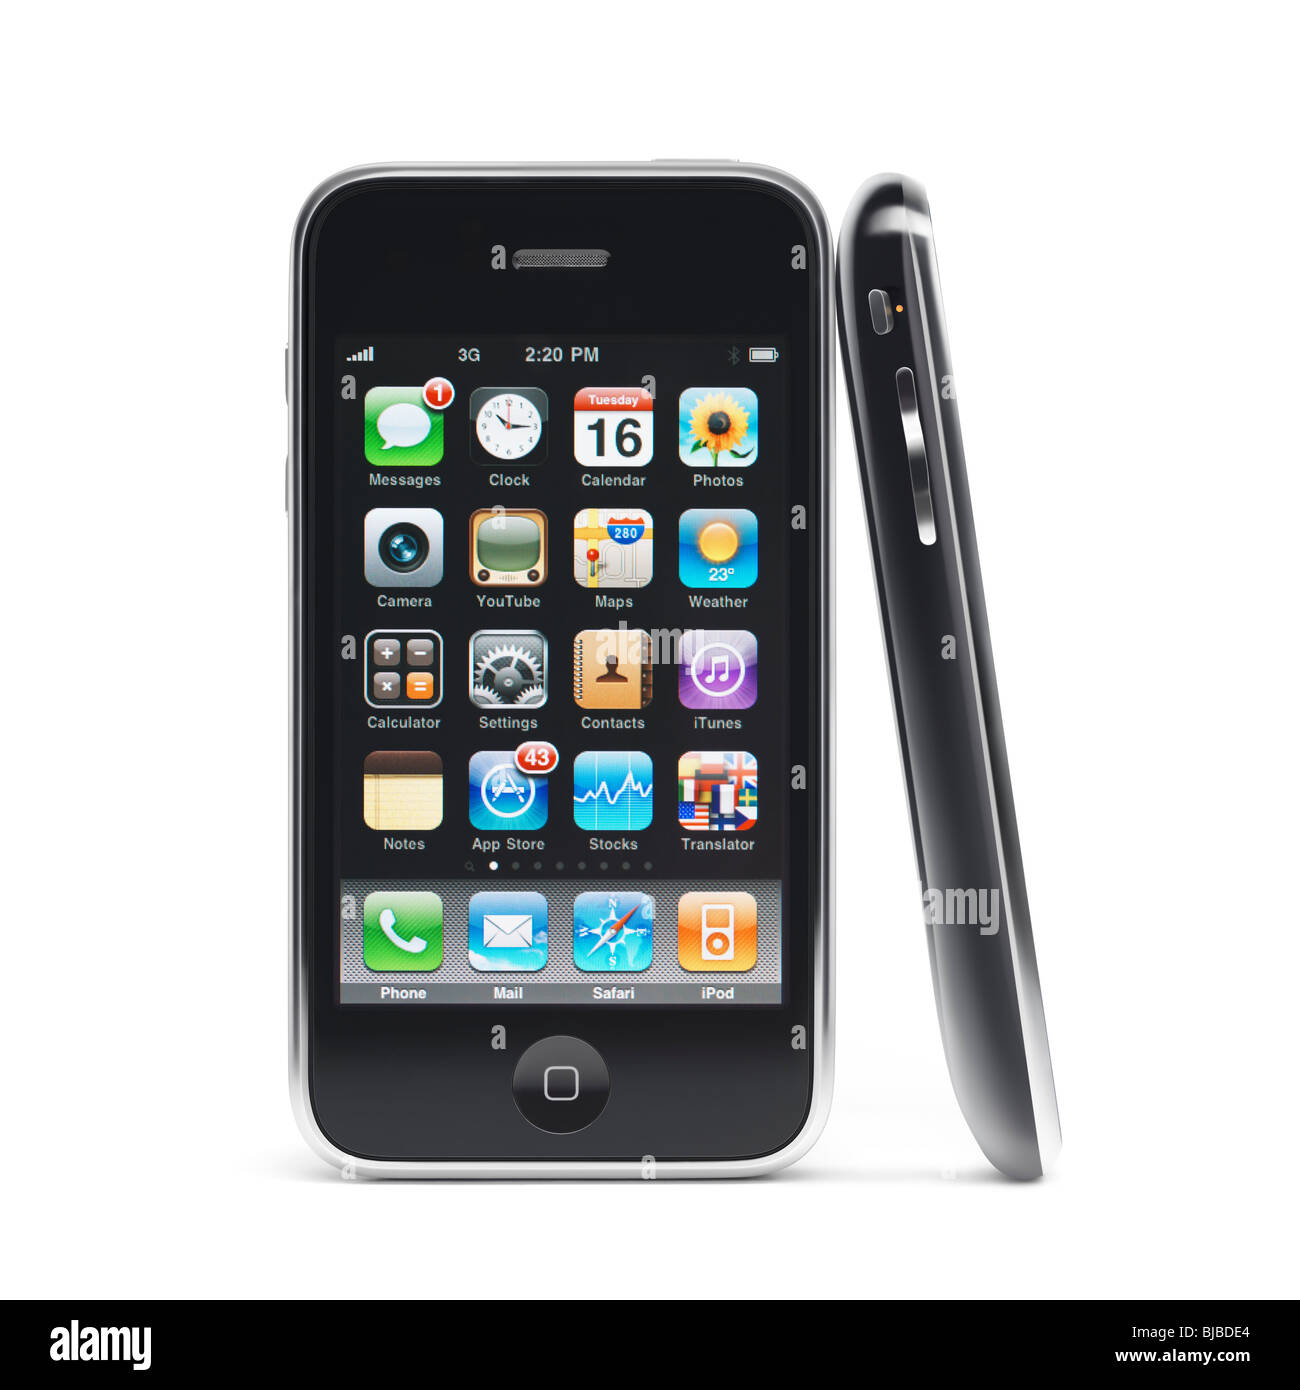 Zwei Apple iPhone 3Gs 3G Smartphones isoliert auf weißem Hintergrund  Stockfotografie - Alamy